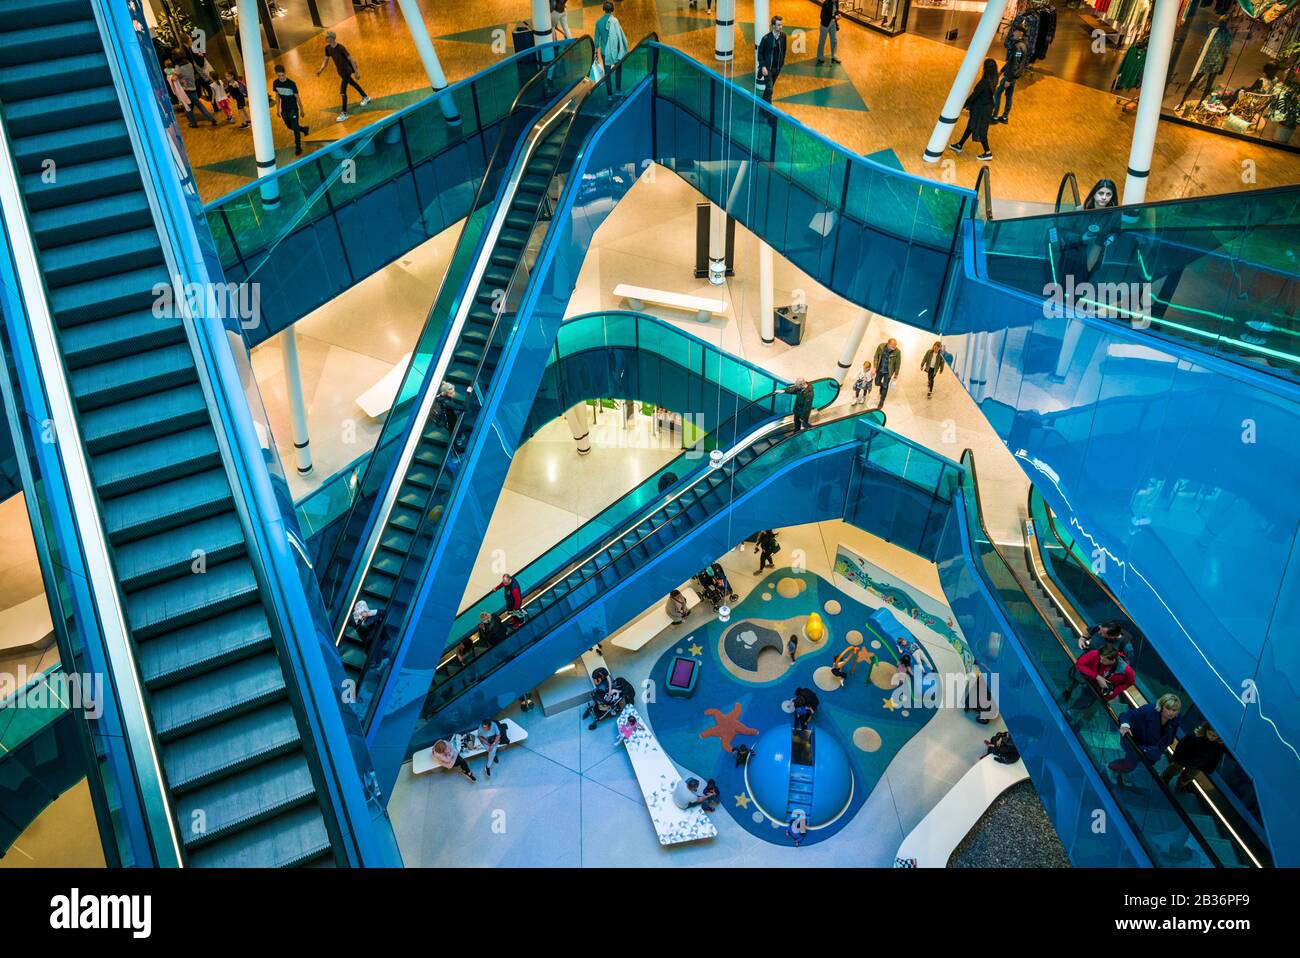 Sweden, Scania, Malmo, Emporia Shopping mall, interior Stock Photo